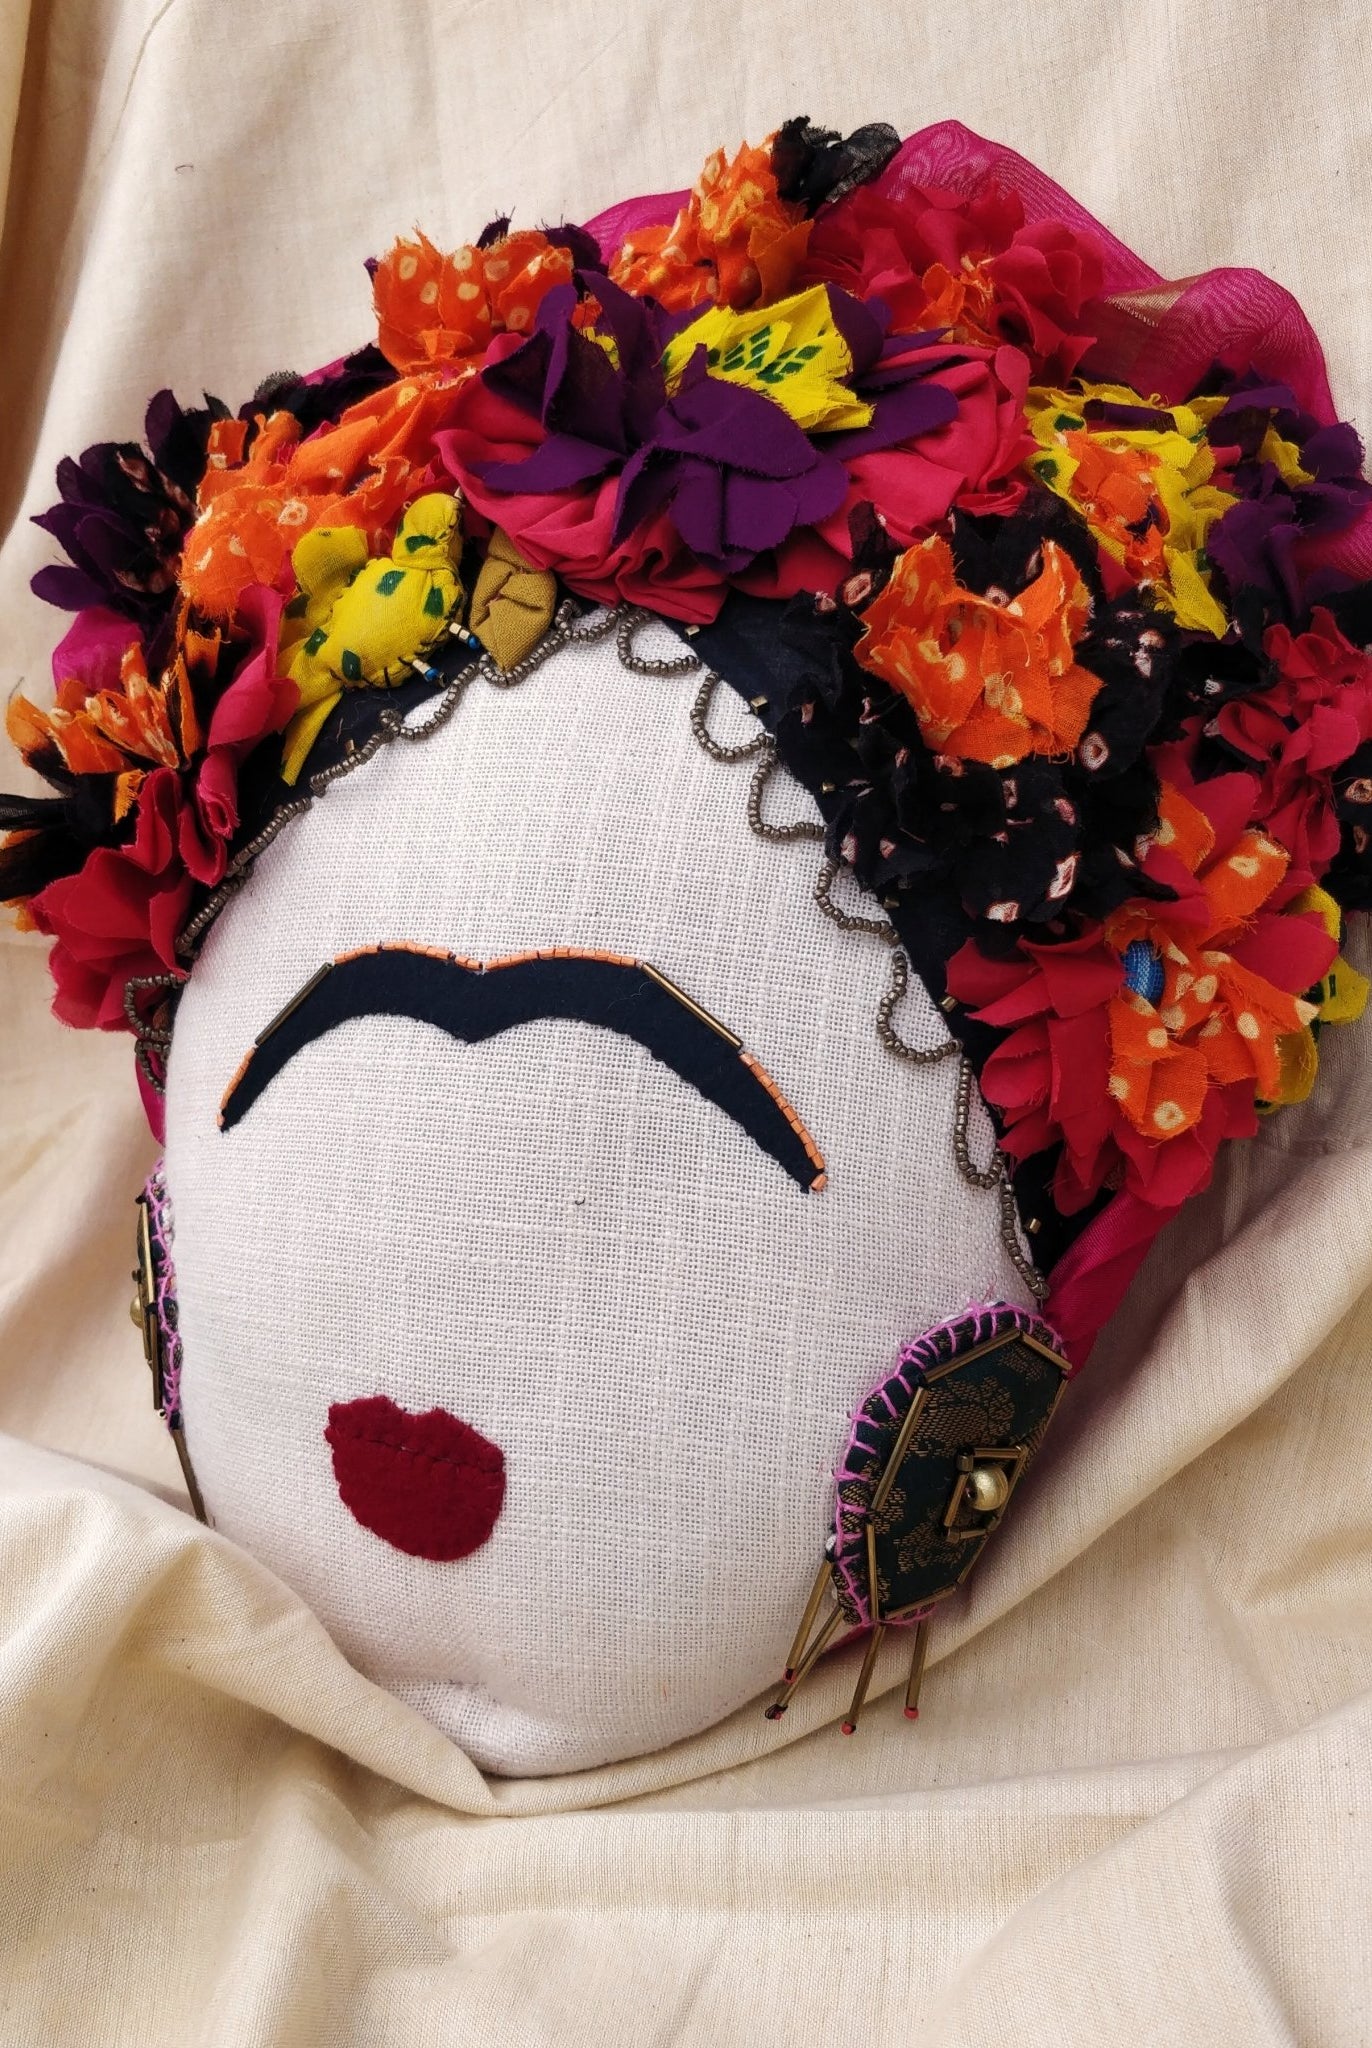 Frida Kahlo Cushion - CiceroniCushionD I T I